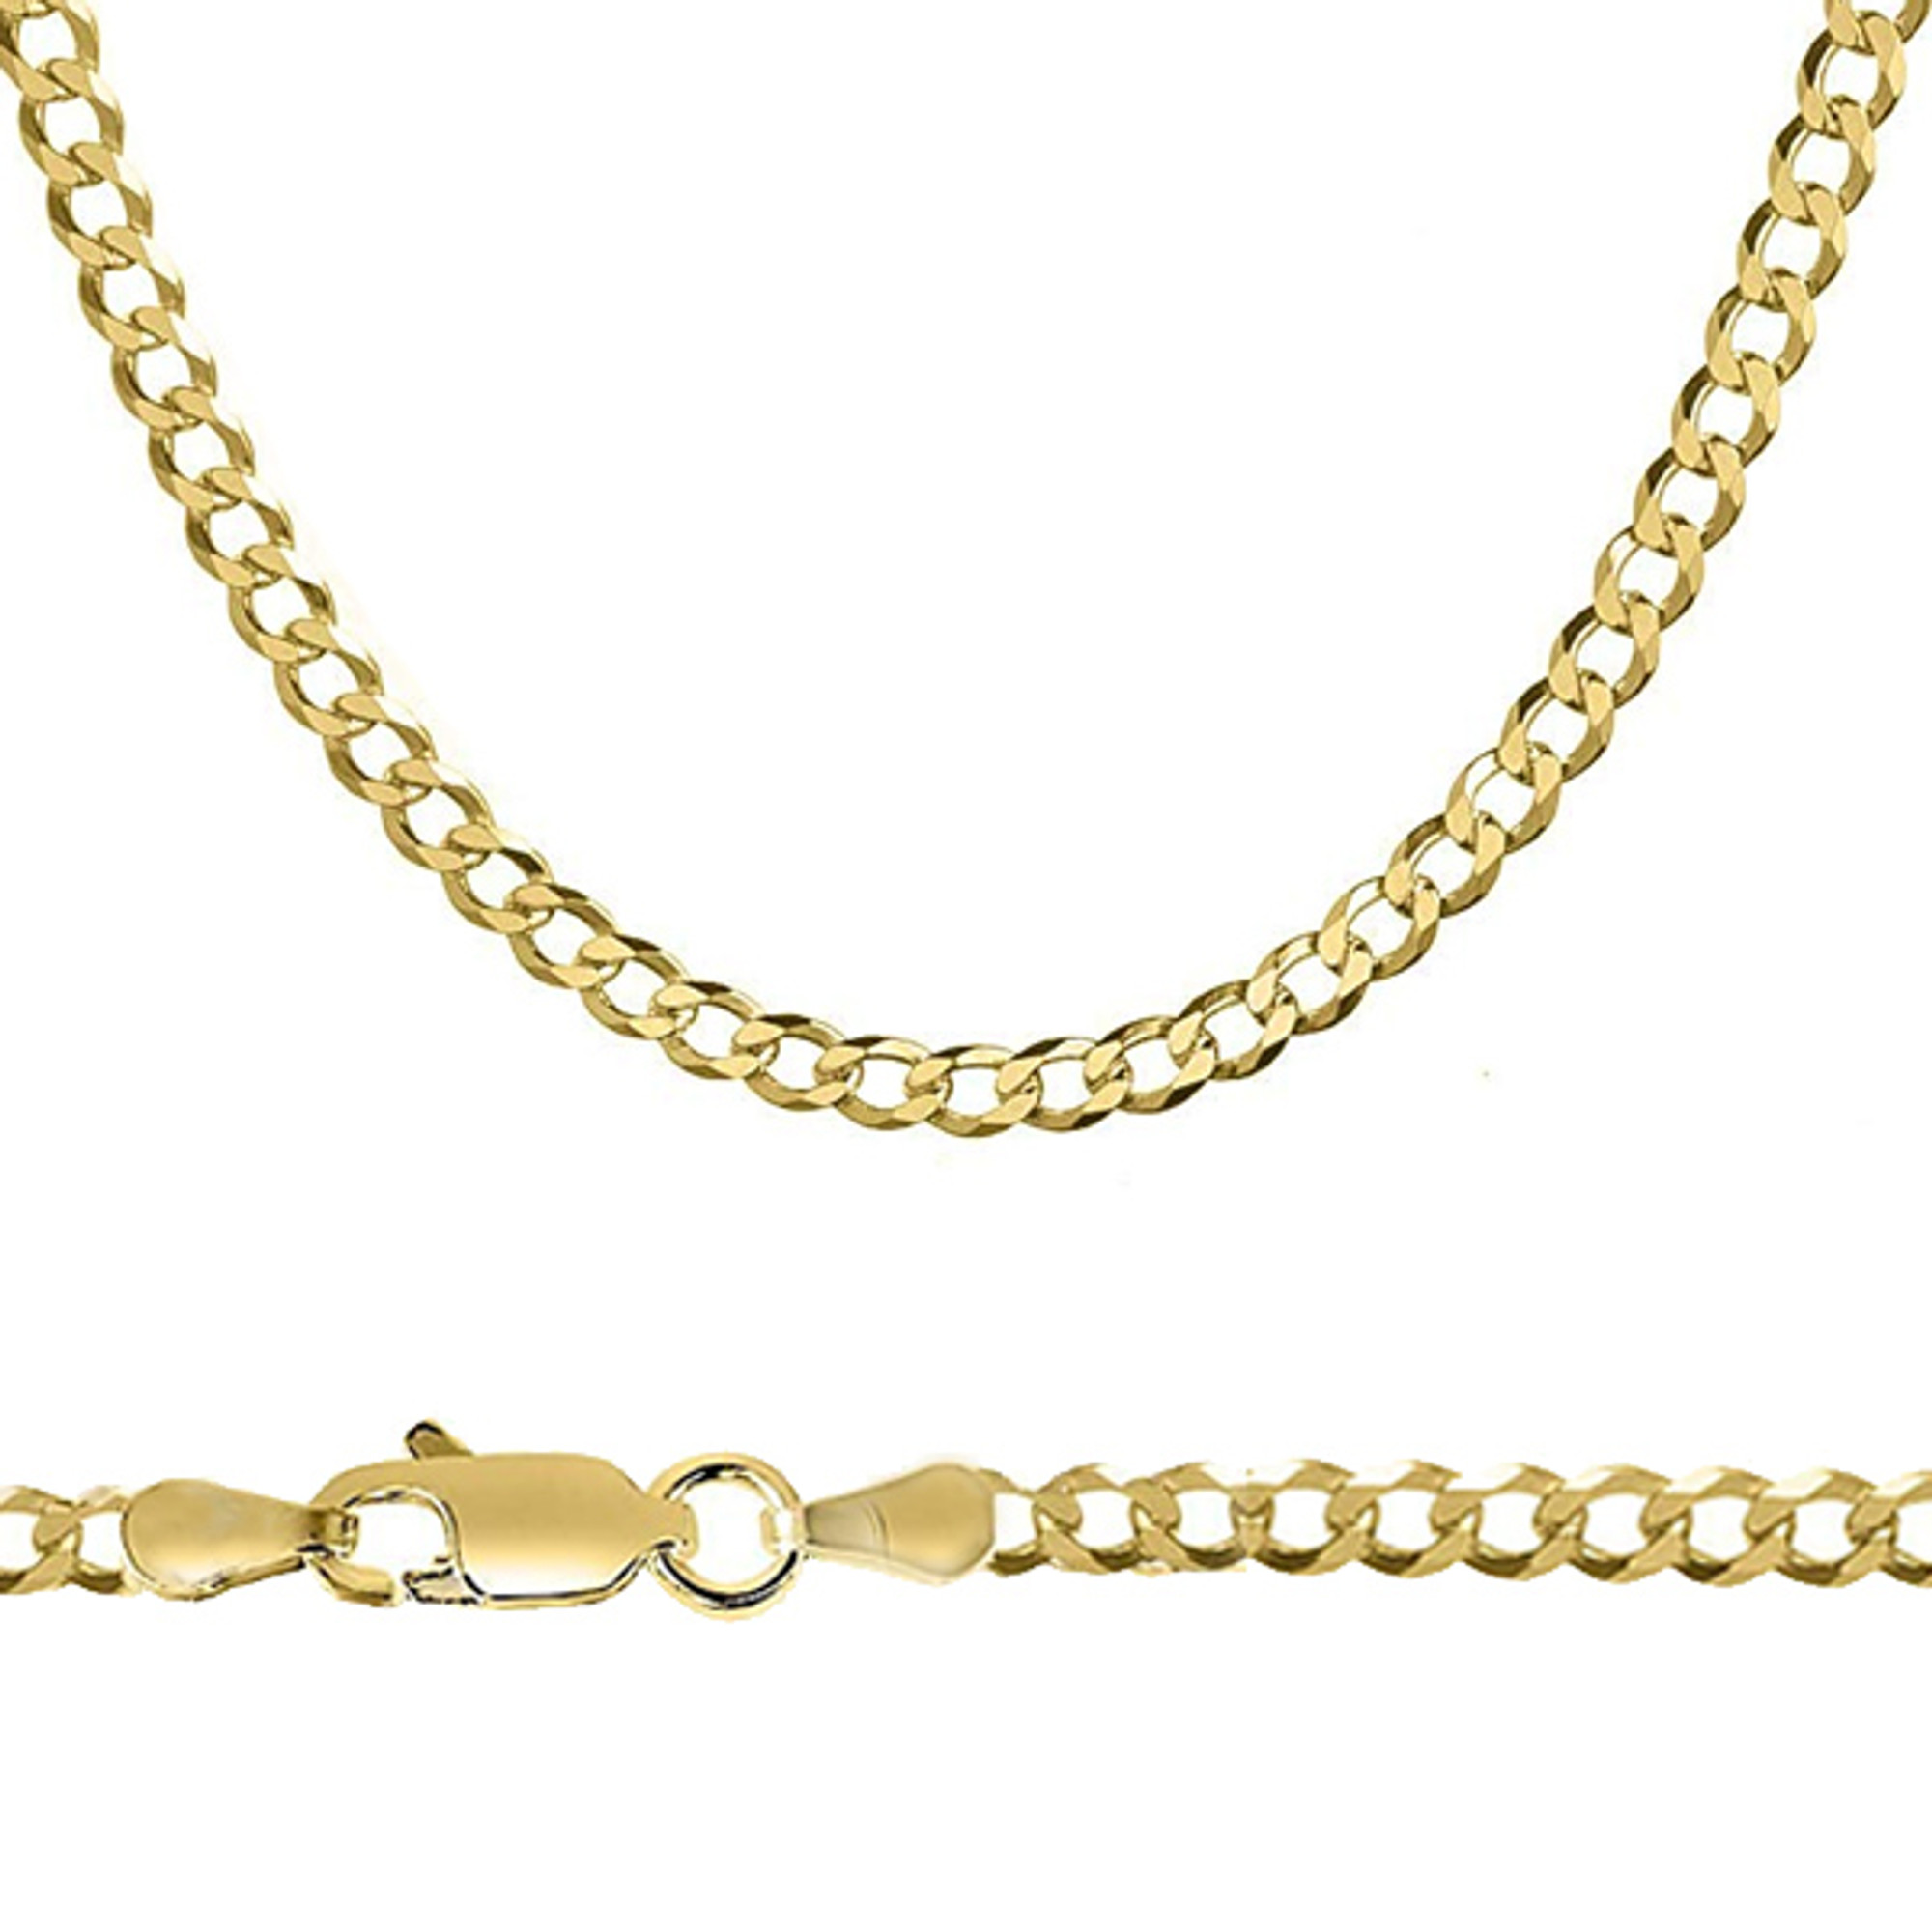 5mm gold curb chain